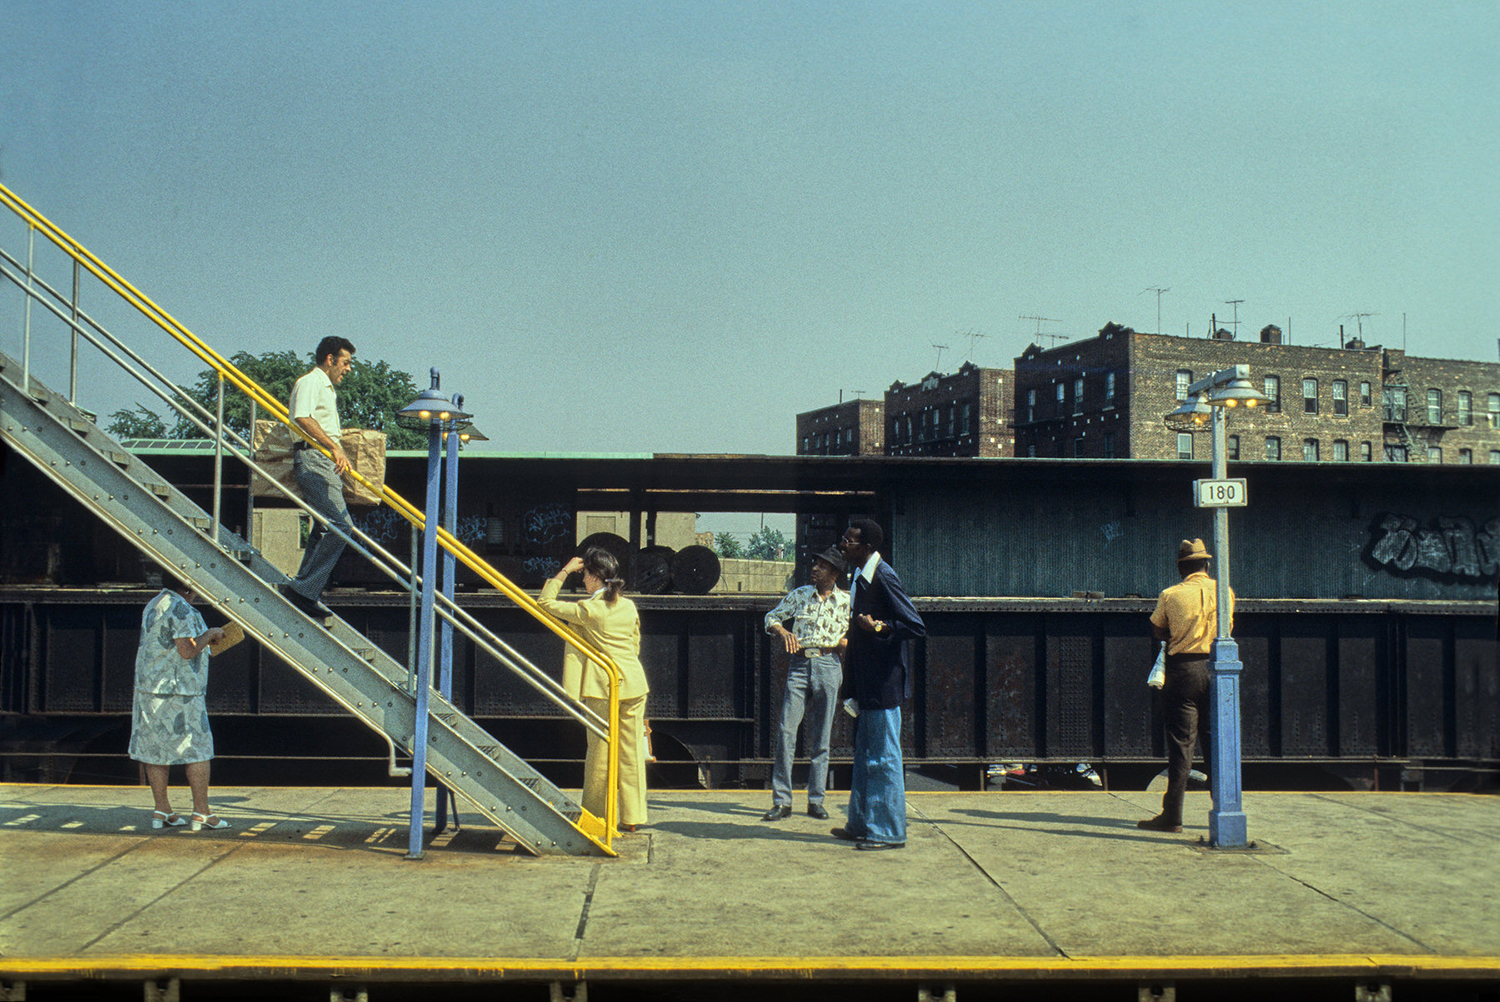 محطة مرتفعة شارع 180 كوينز، نيويورك ،عام 1982